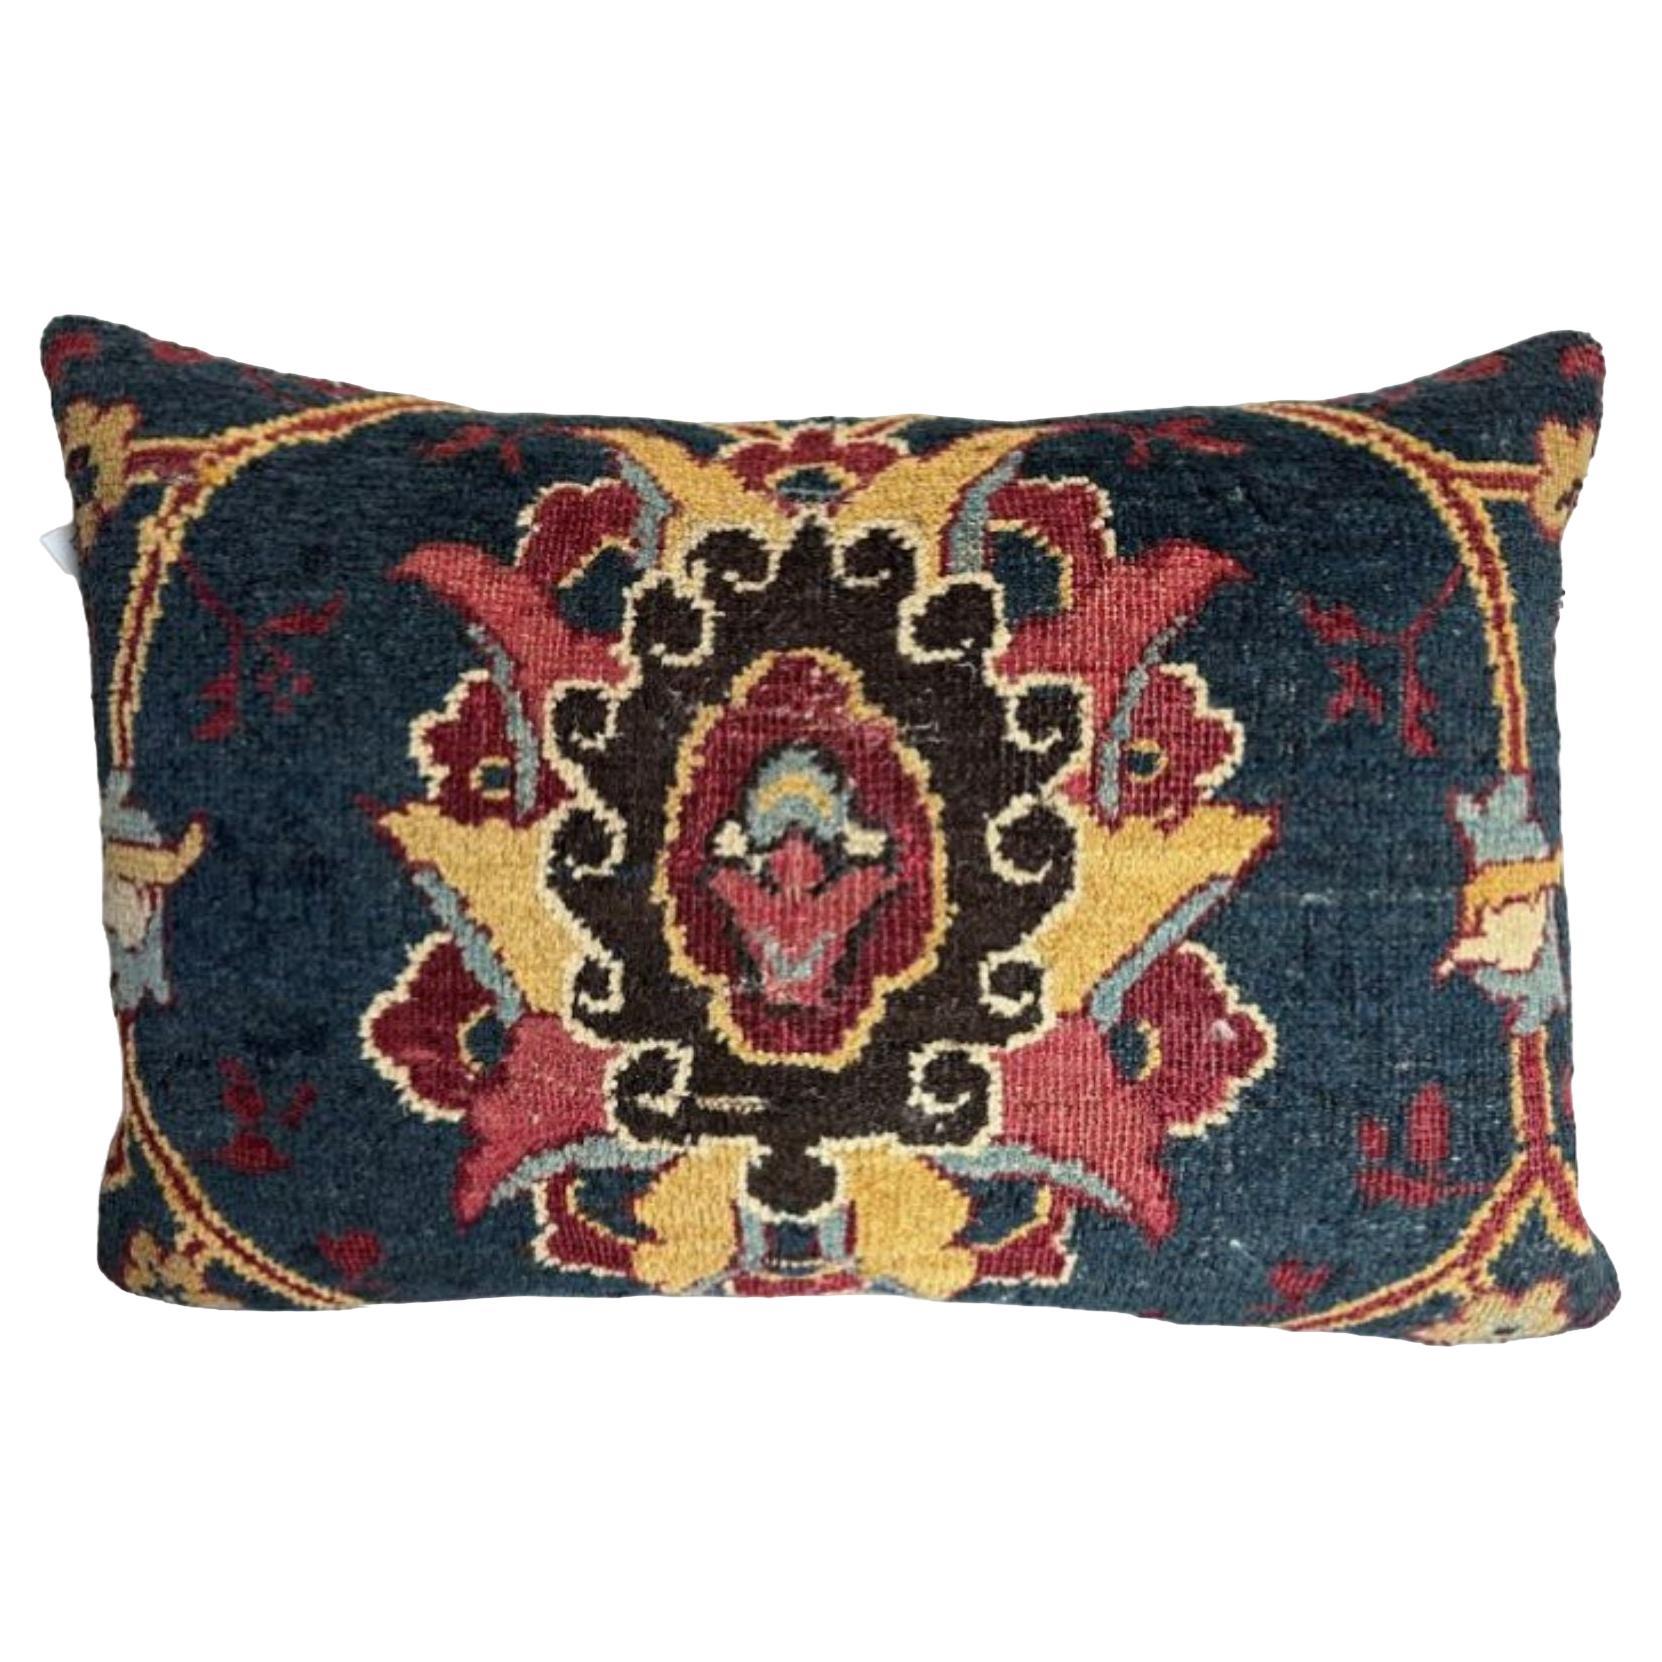 1850 Amritsar Pillow - 24" X 16"